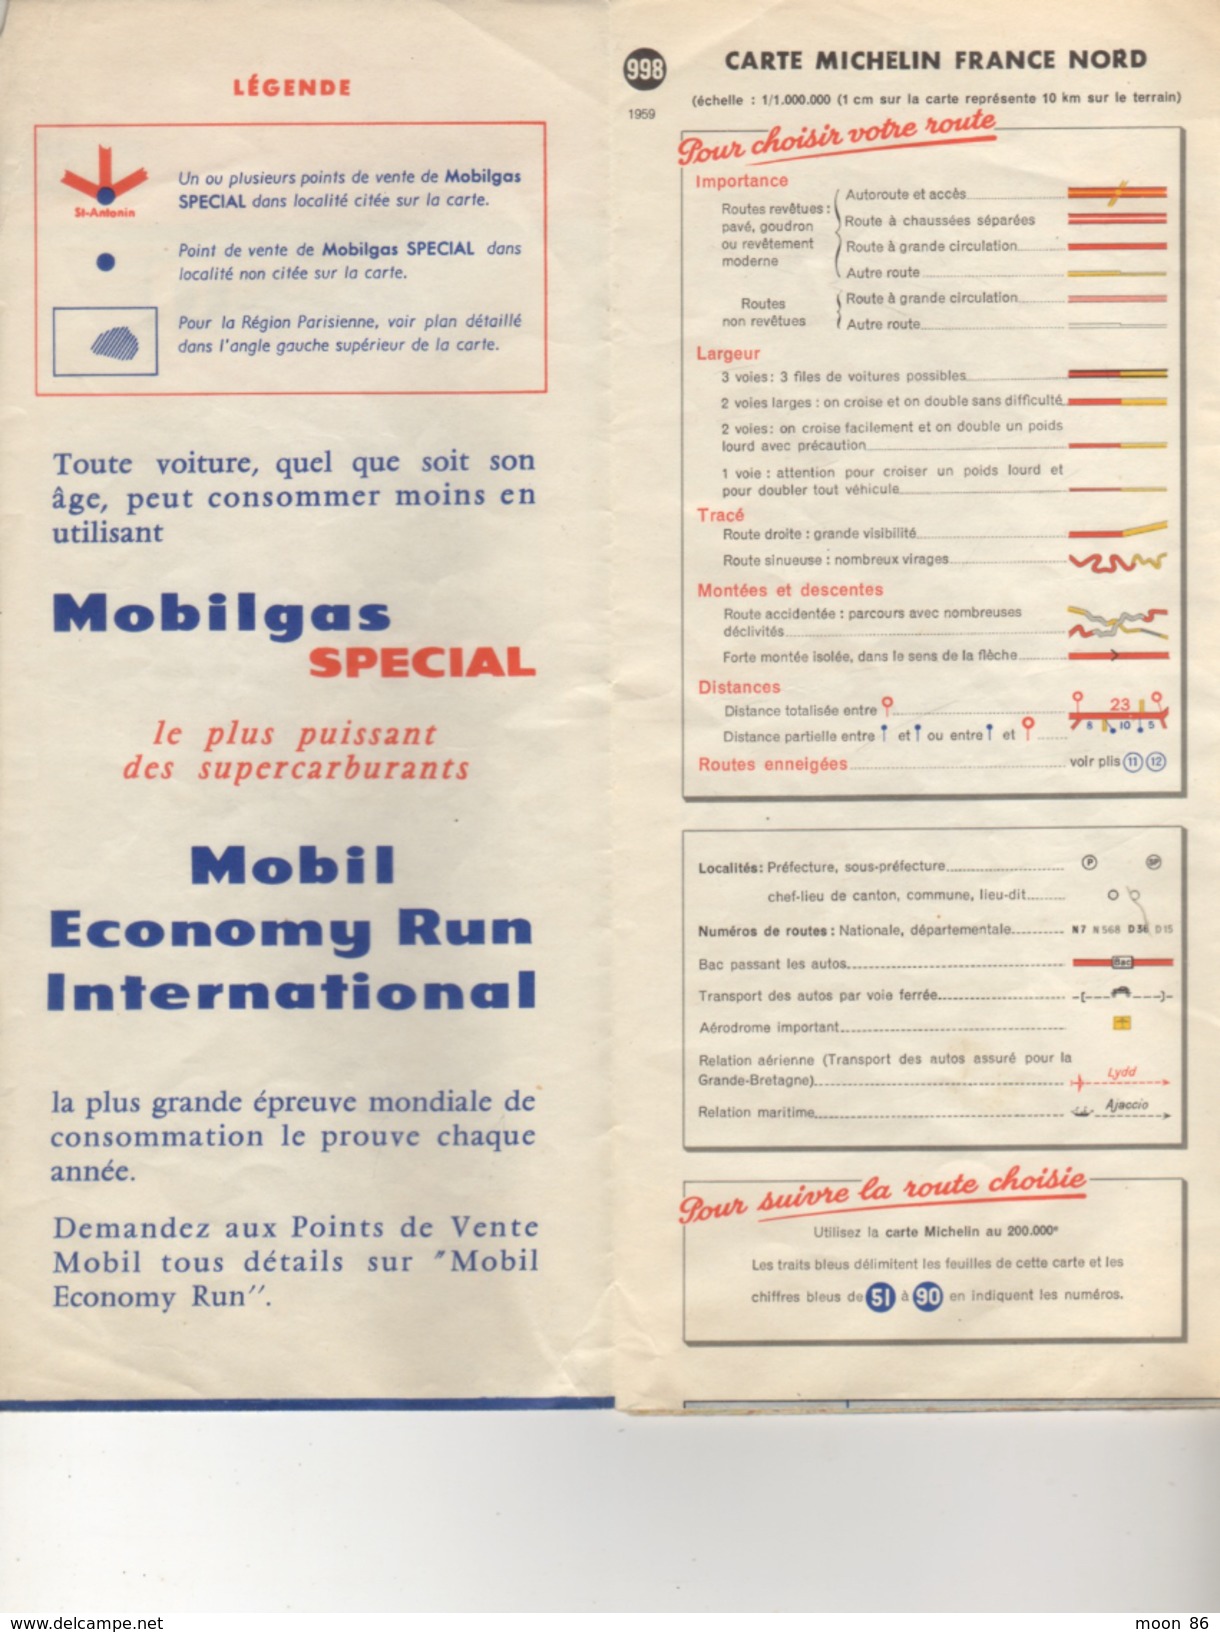 CARTE  MICHELIN 1959  FRANCE NORD  998 - MOBIL GRANDES ROUTES - Cartes Routières